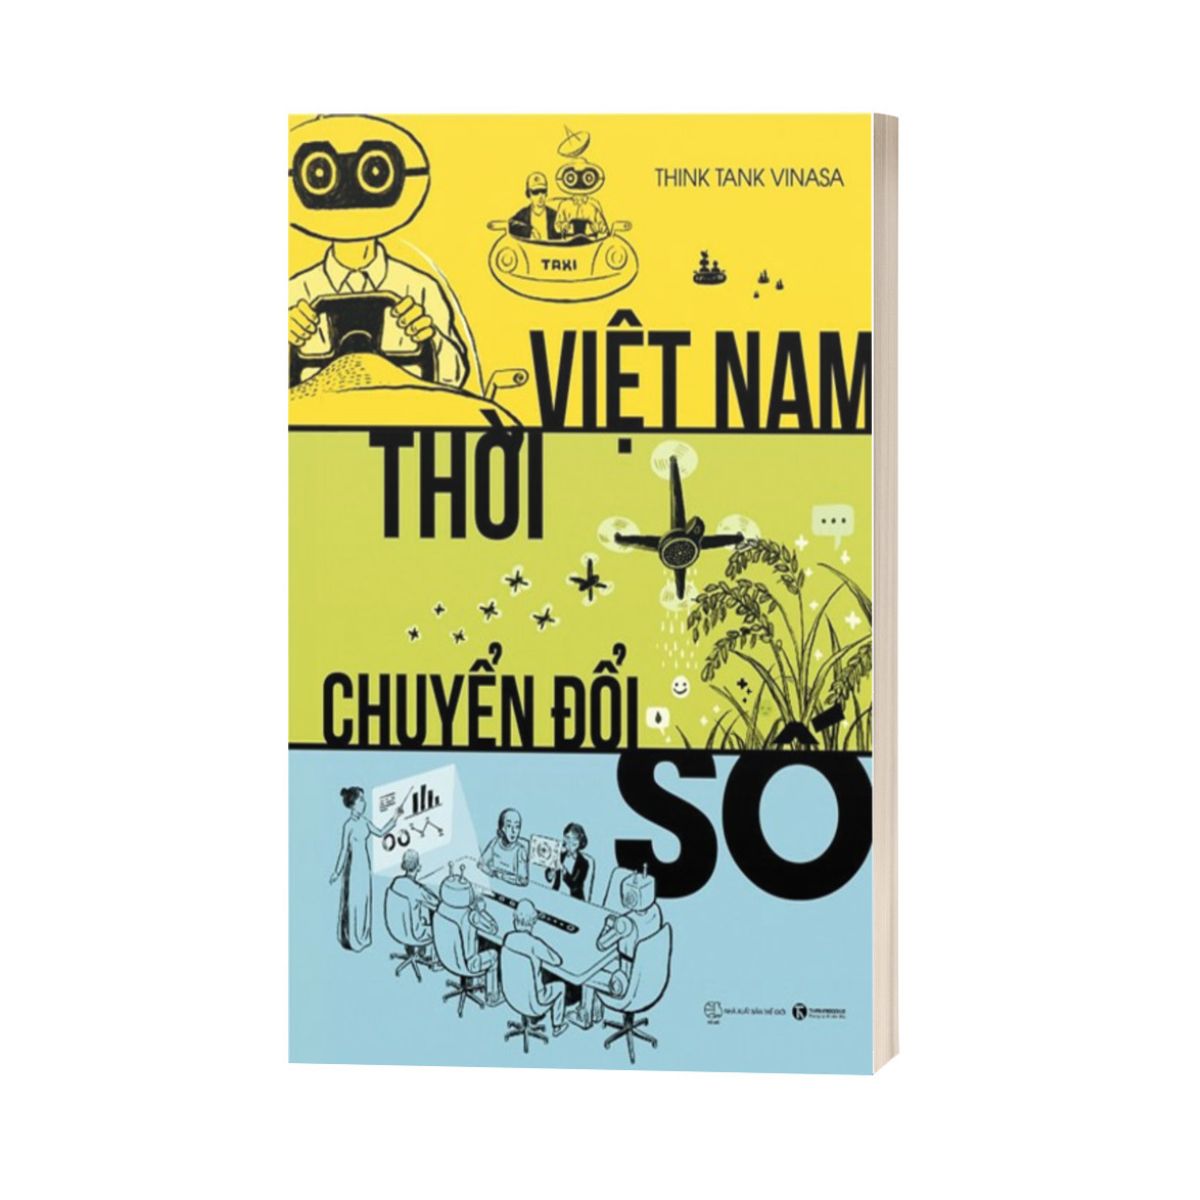 Việt Nam Thời Chuyển Đổi Số (Tái Bản)